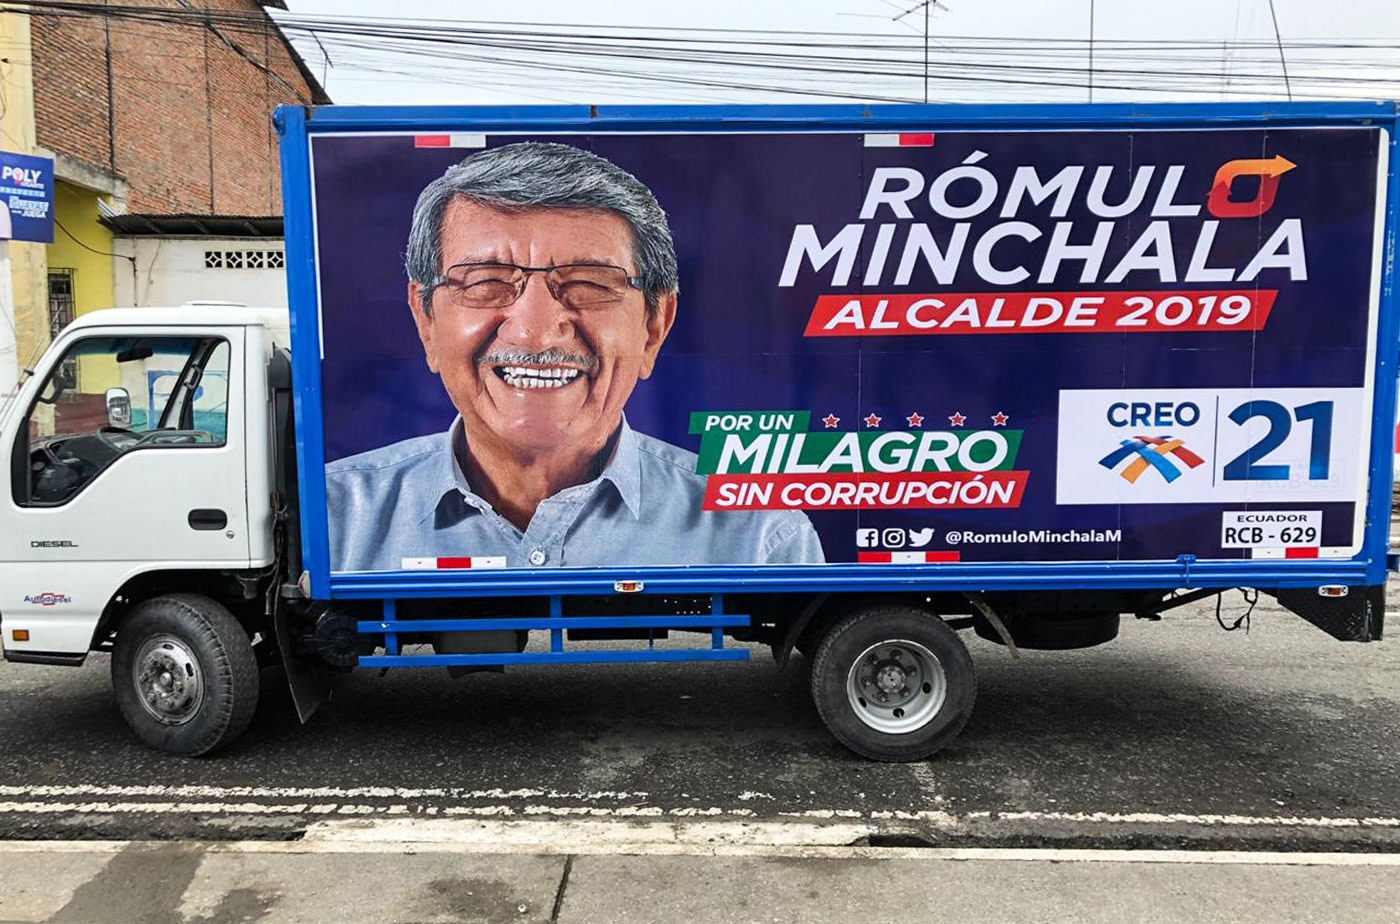 Minchala Creo milagro Ecuador Politica romulominchala elecciones guillermolasso branding 